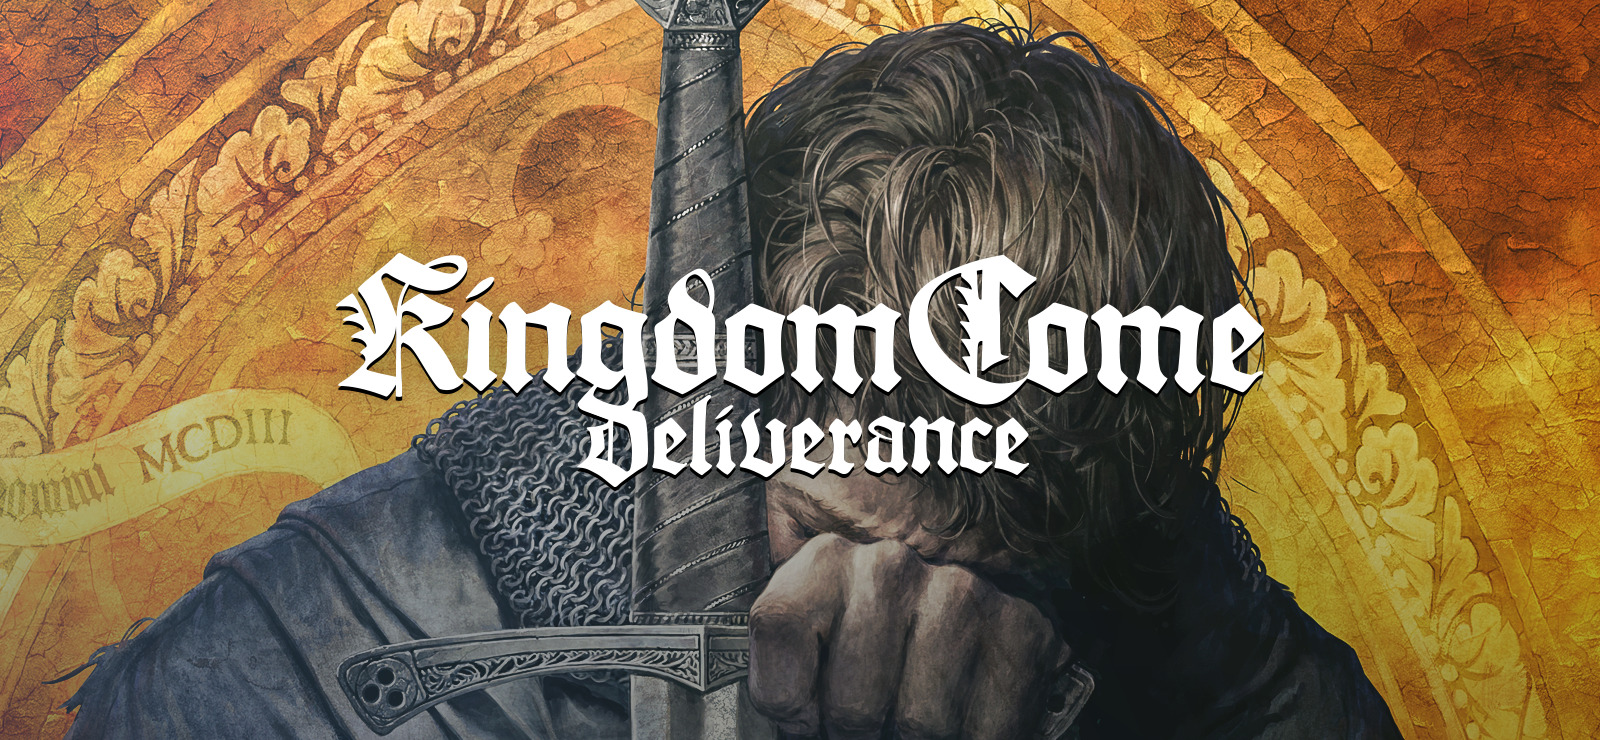 66 Kingdom Come Deliverance On Gog Com